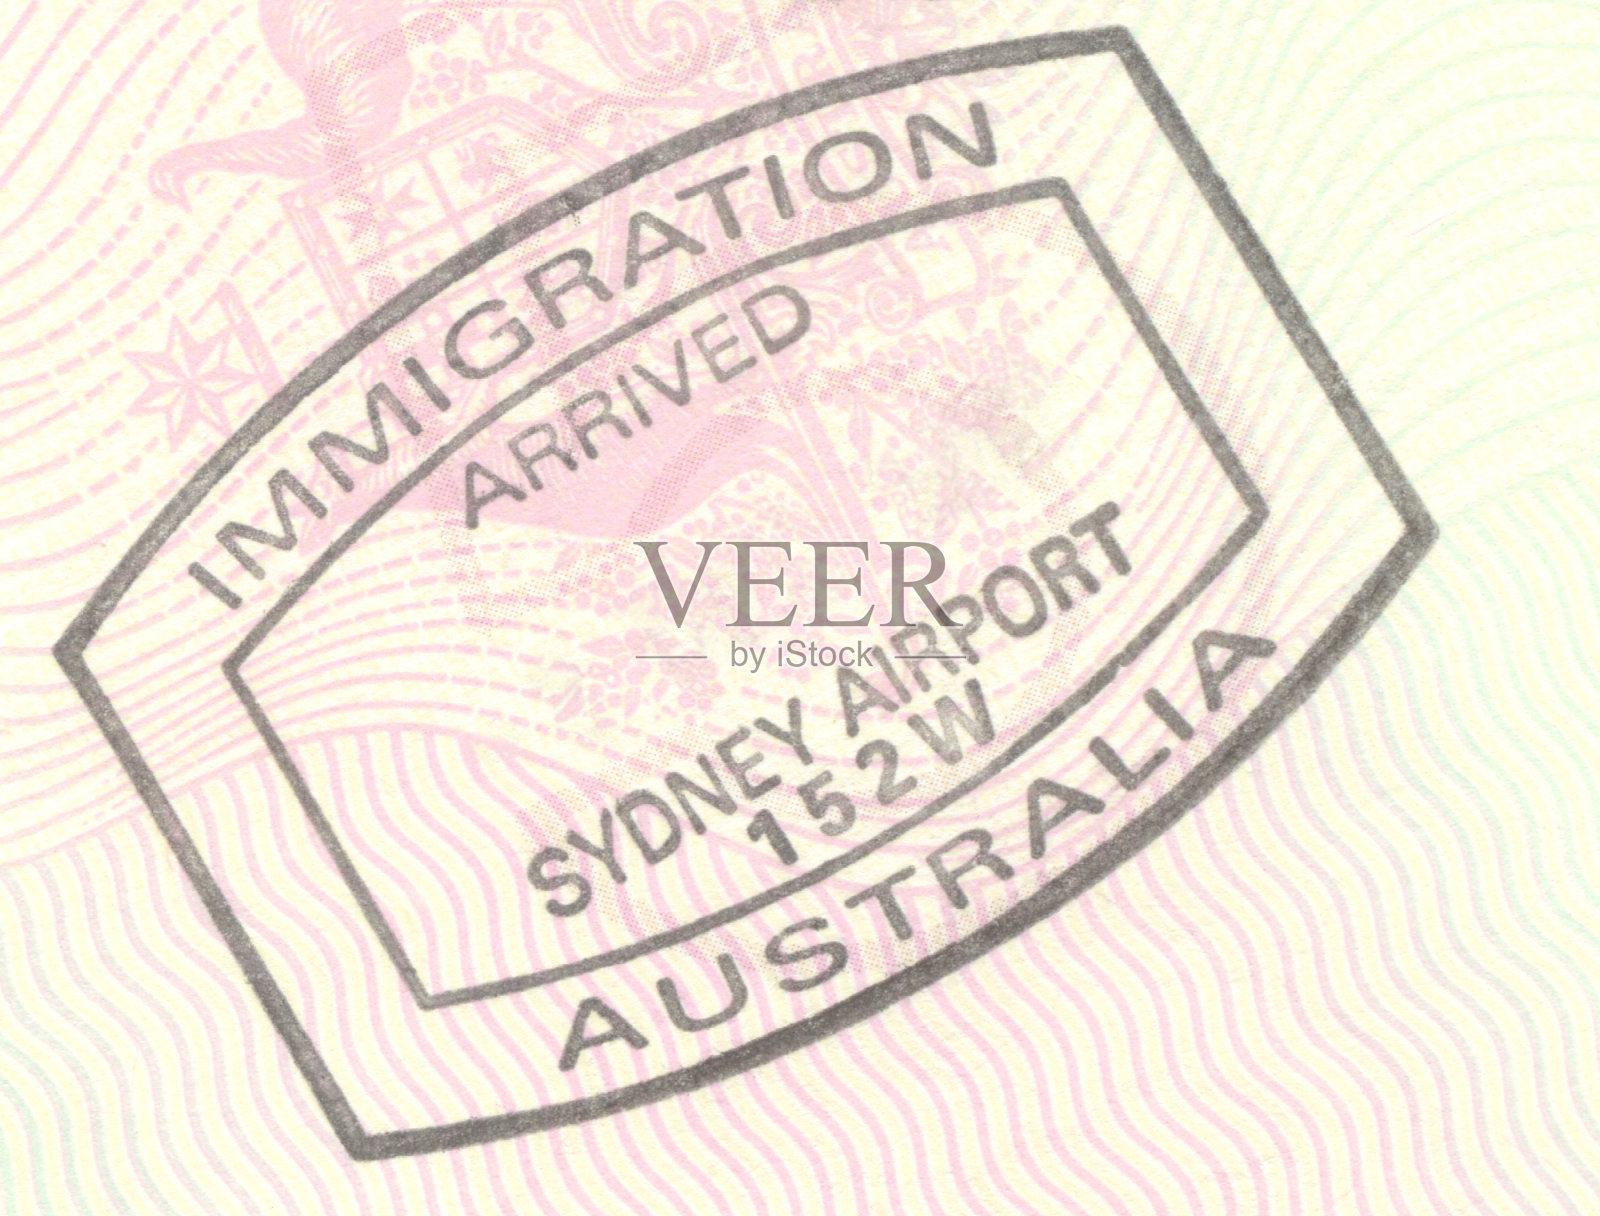 澳大利亚入境印章照片摄影图片